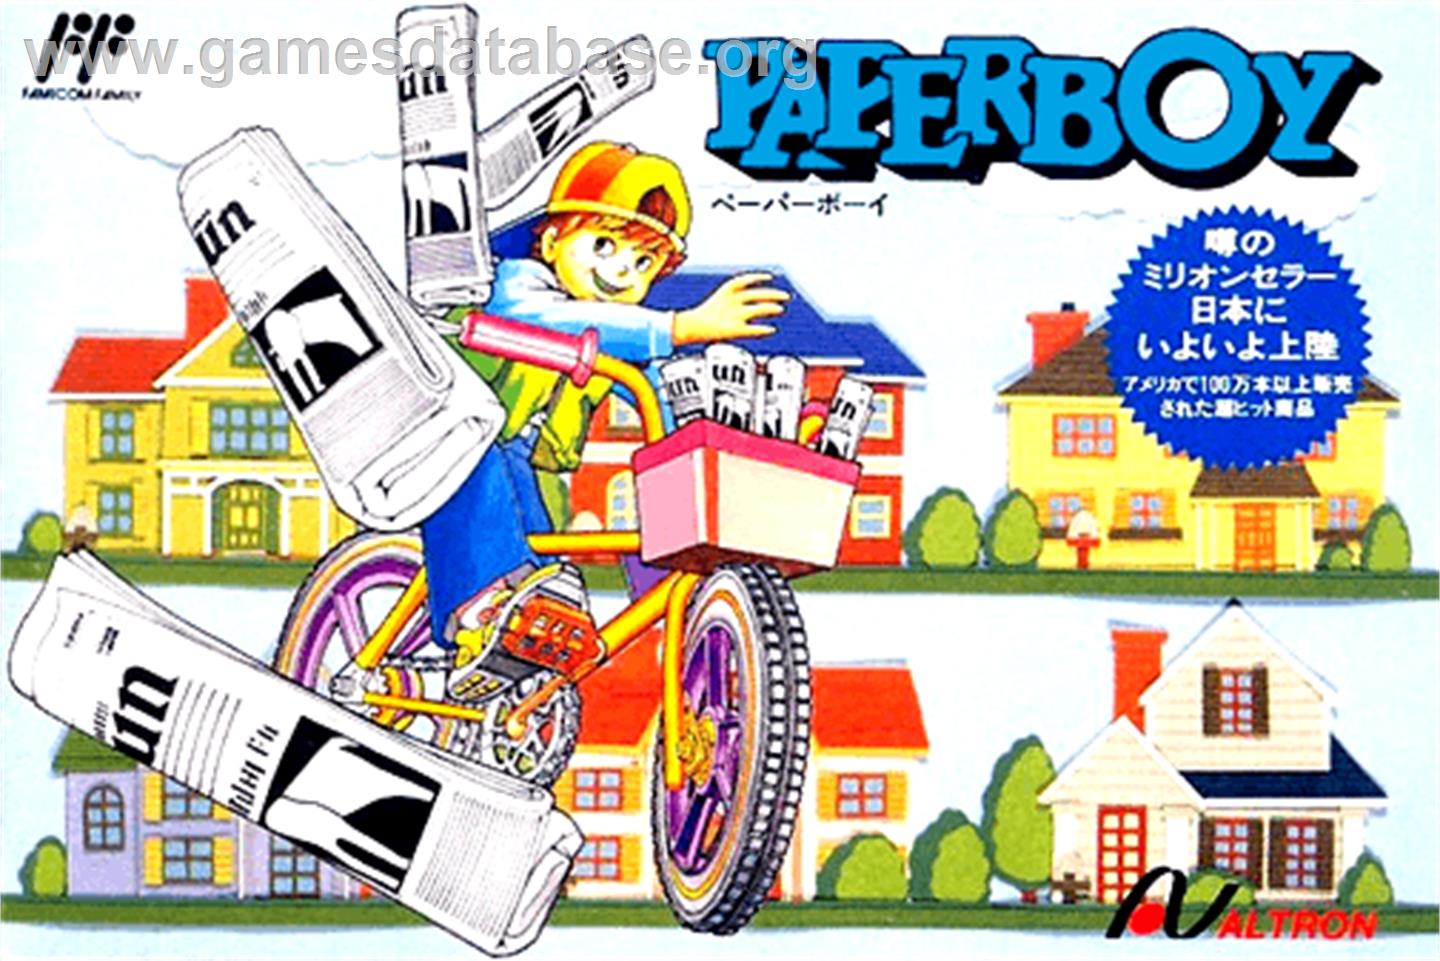 Paperboy - Nintendo NES - Artwork - Box